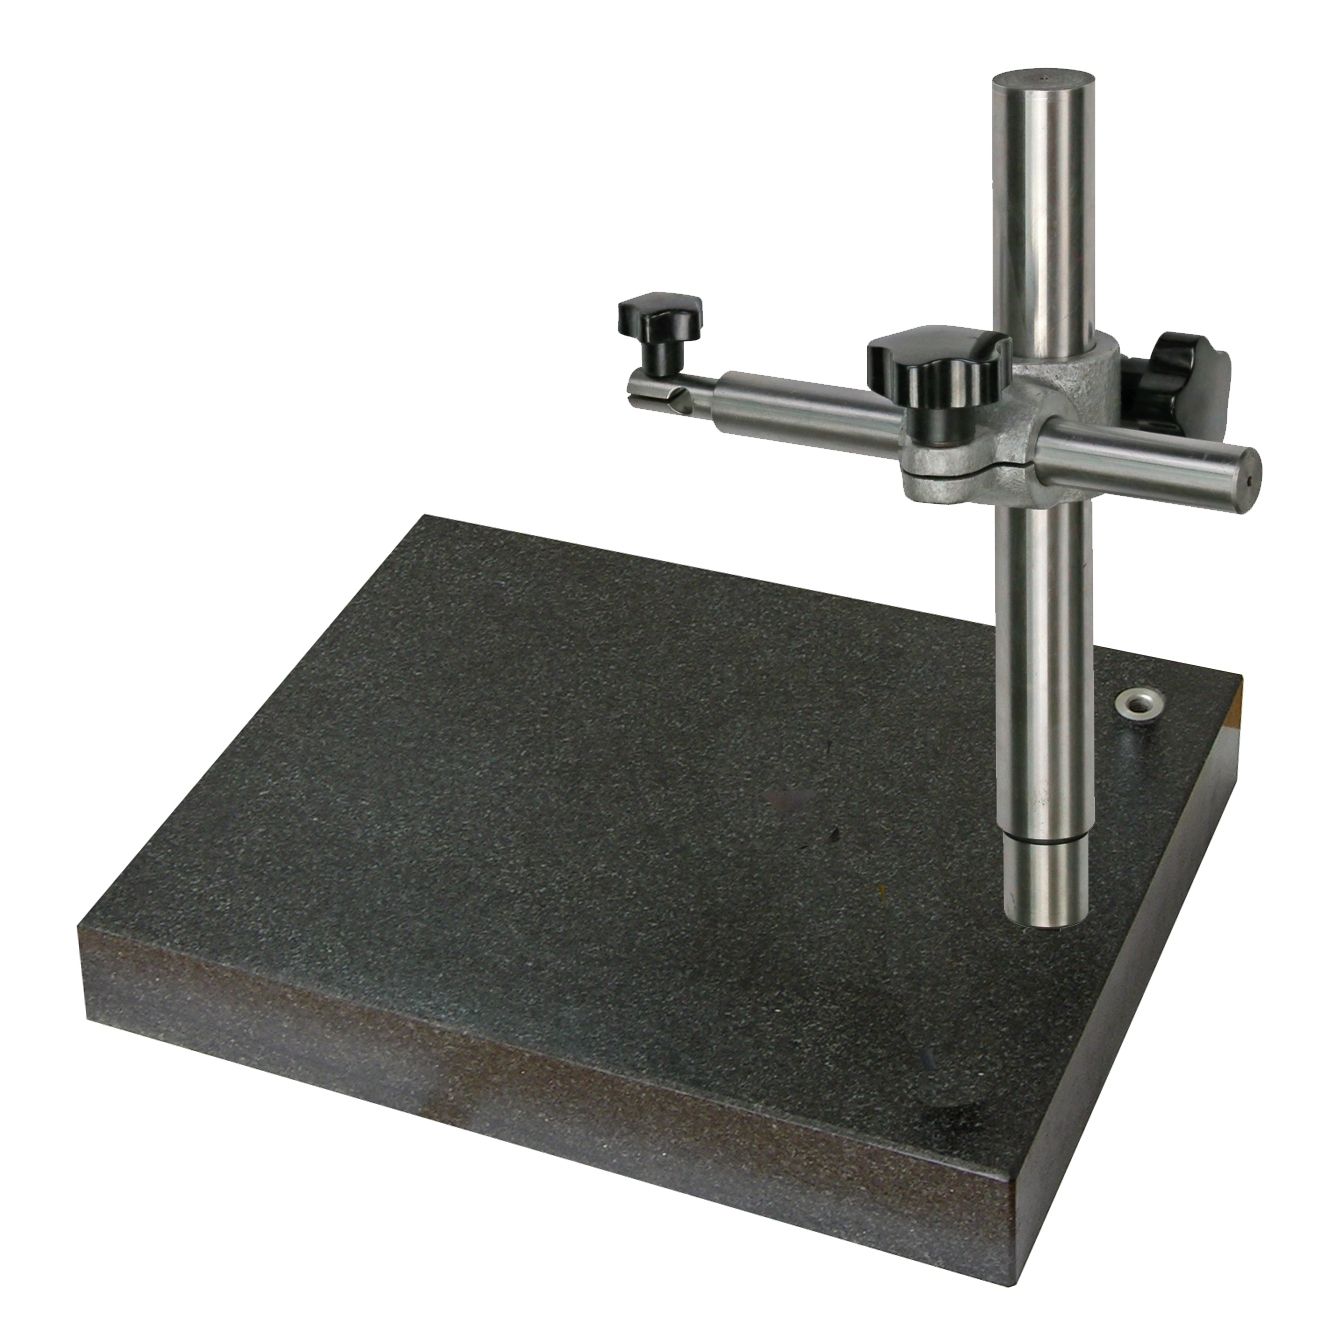 Präzisions-Messtisch 300 x 200 mm mit Messuhrsäule u. Granitplatte